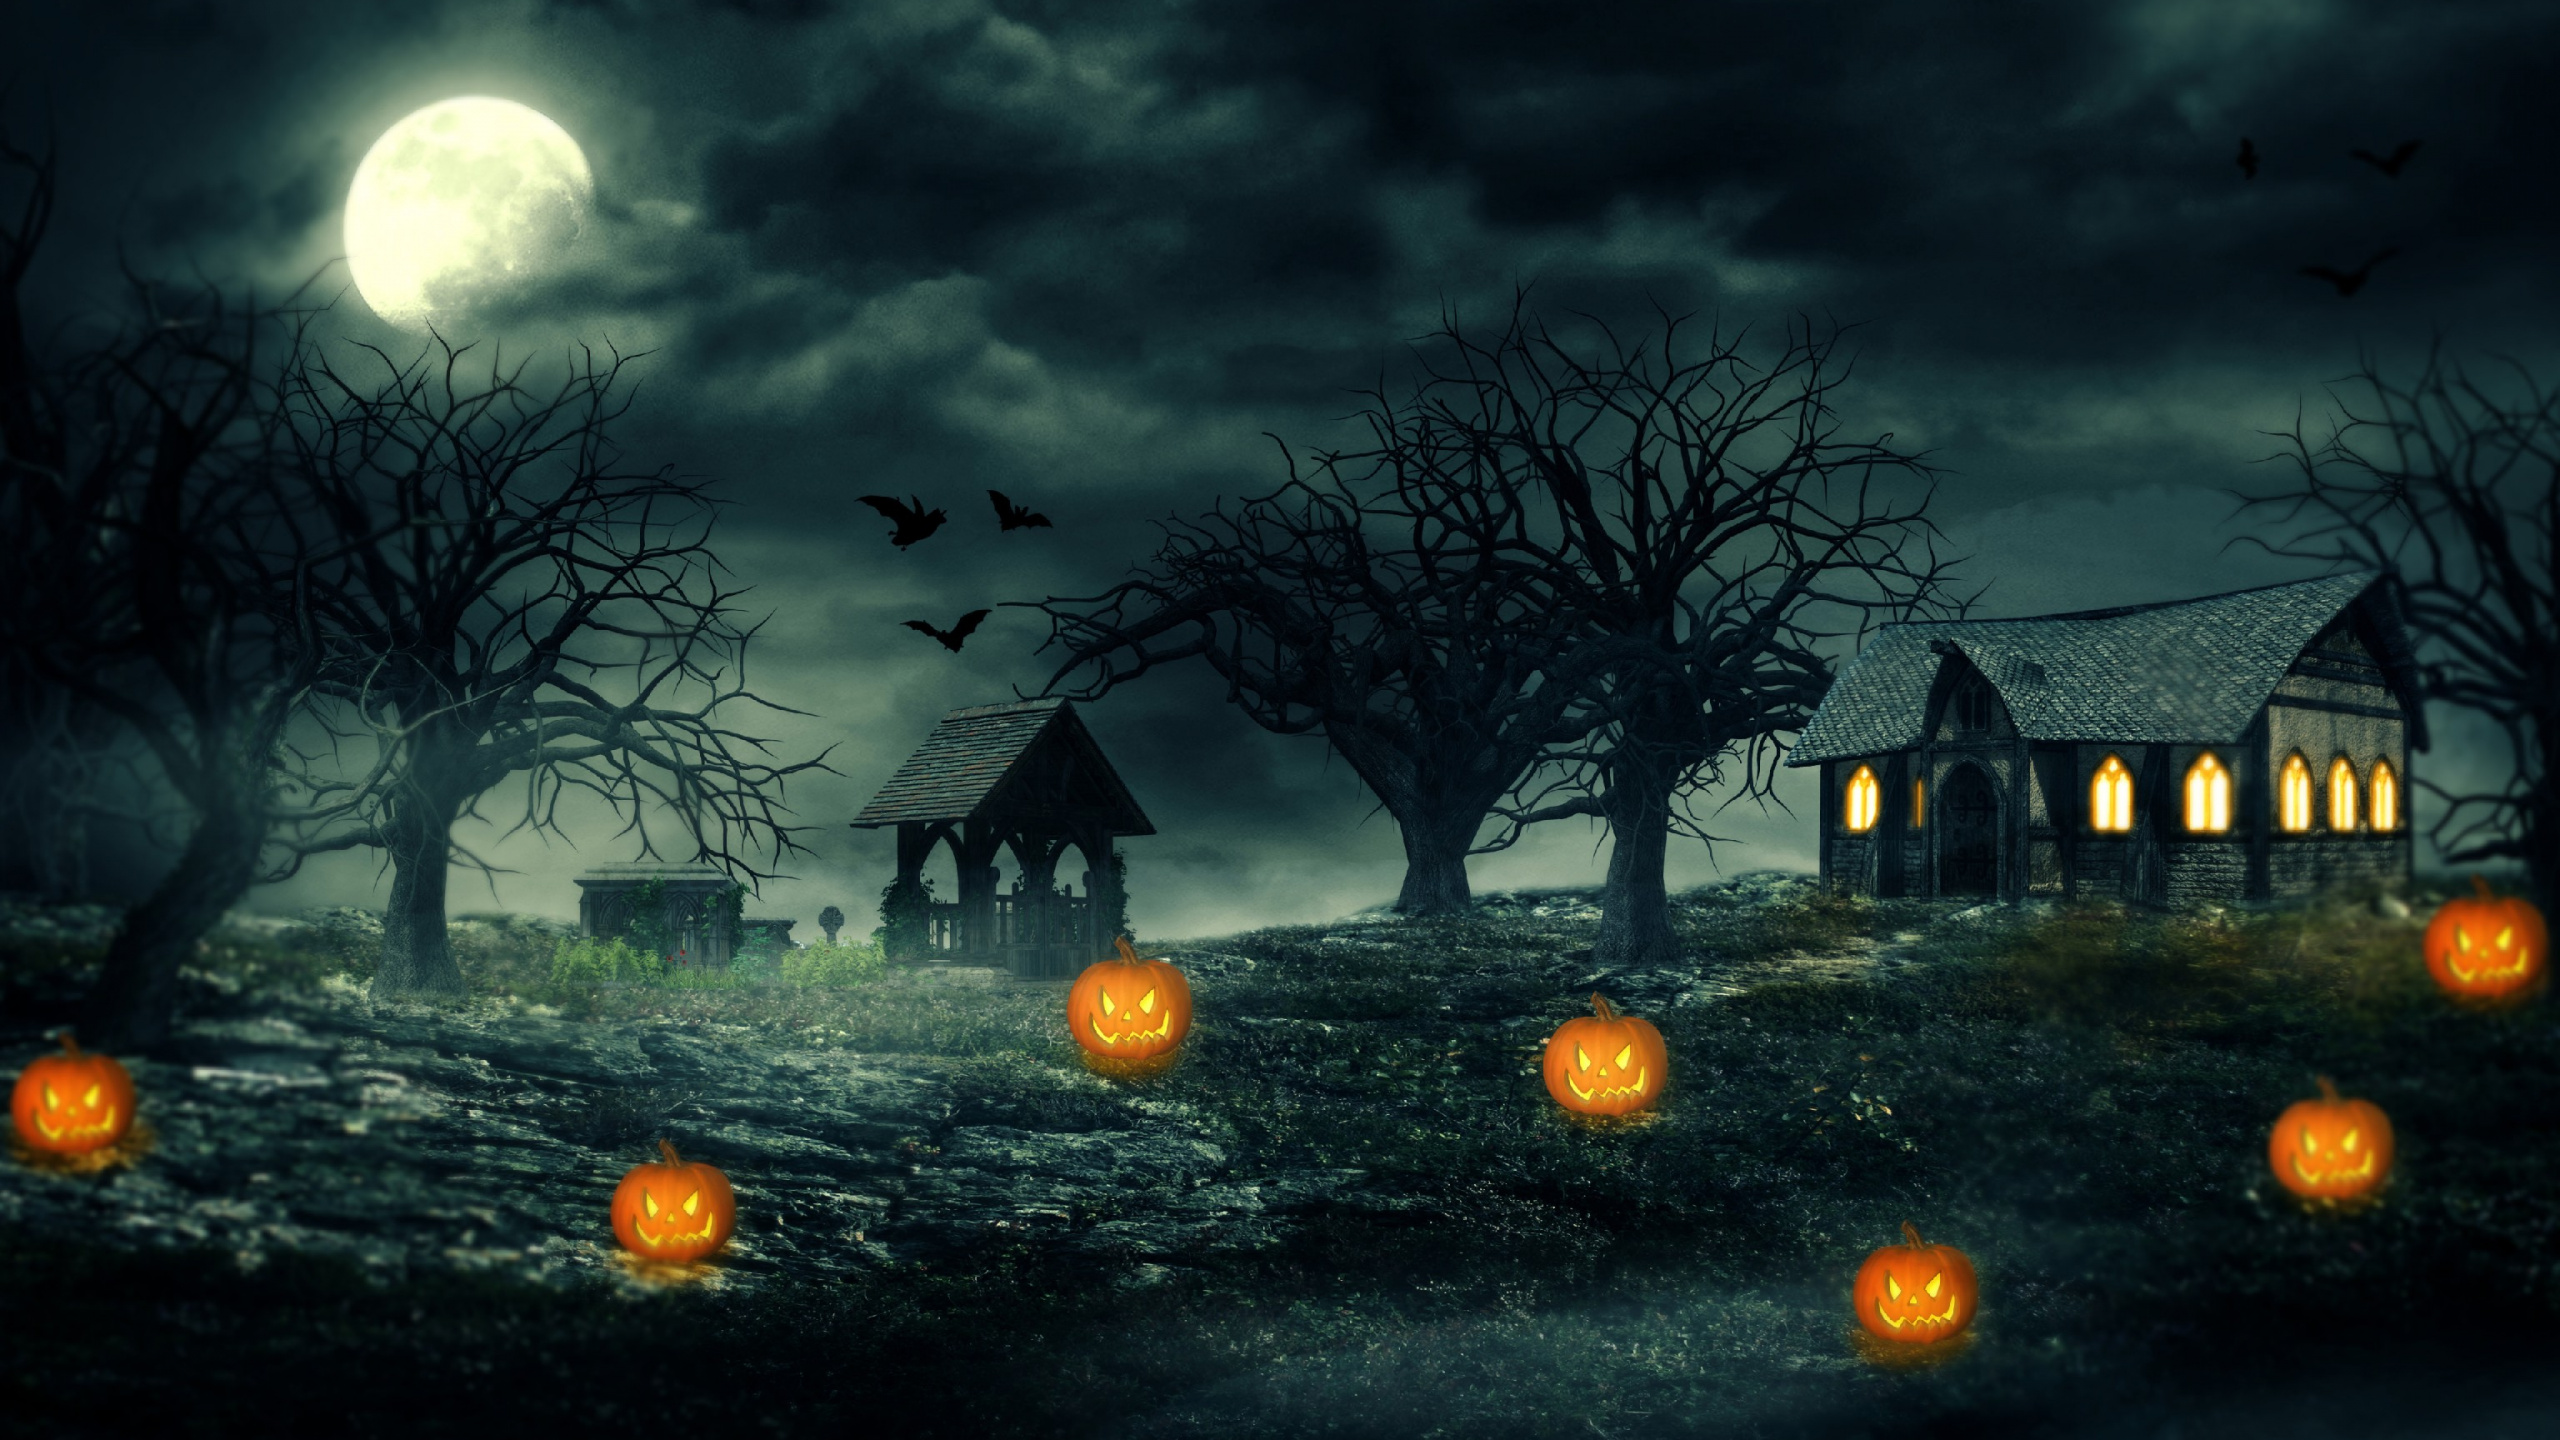 Halloween Haunted House, Haunted House, Haunted Attraction, Nature, Moonlight. Wallpaper in 2560x1440 Resolution